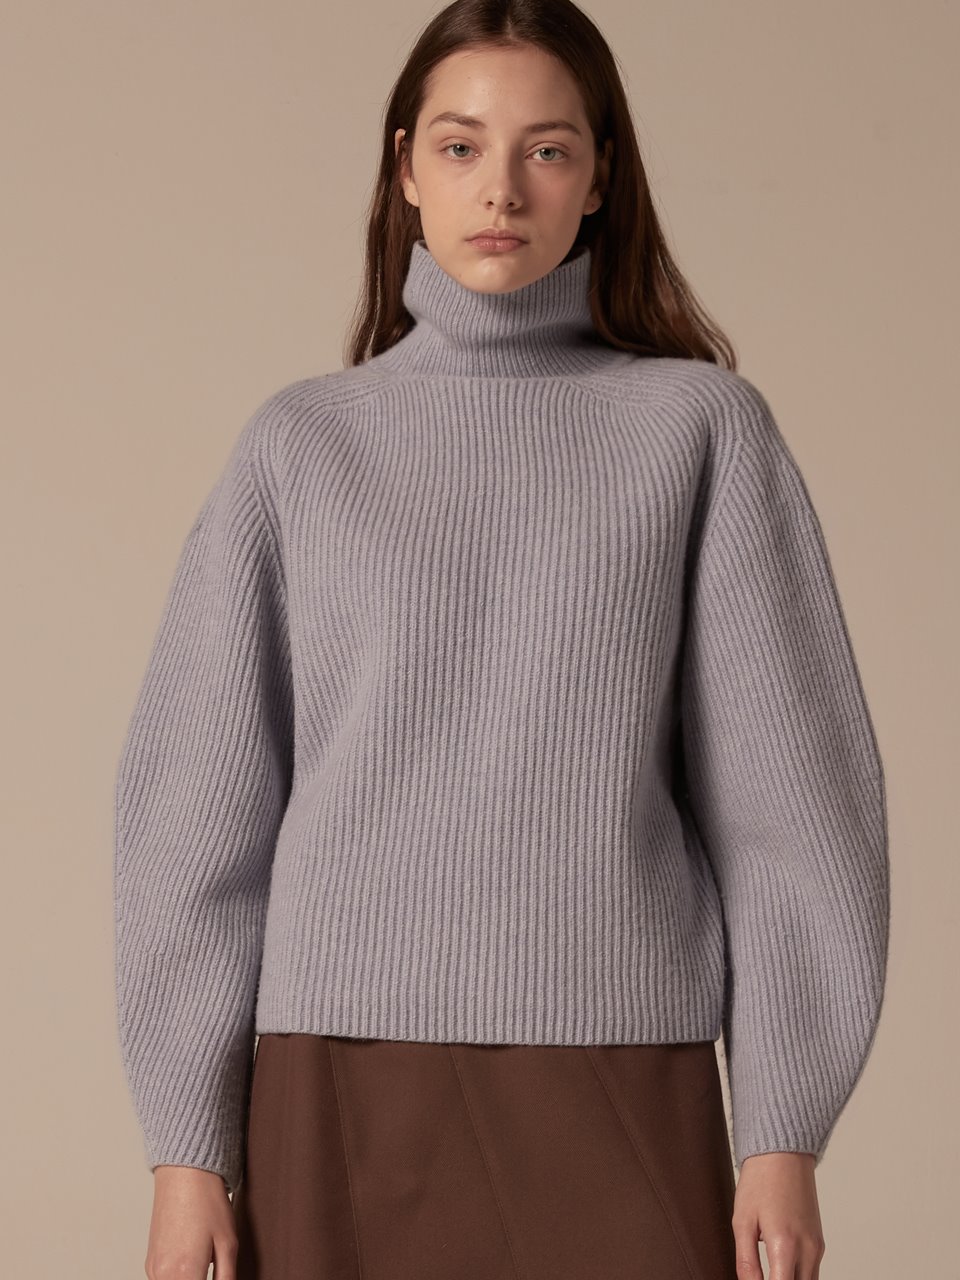 Cashmere blended highneck pullover - Sky blue